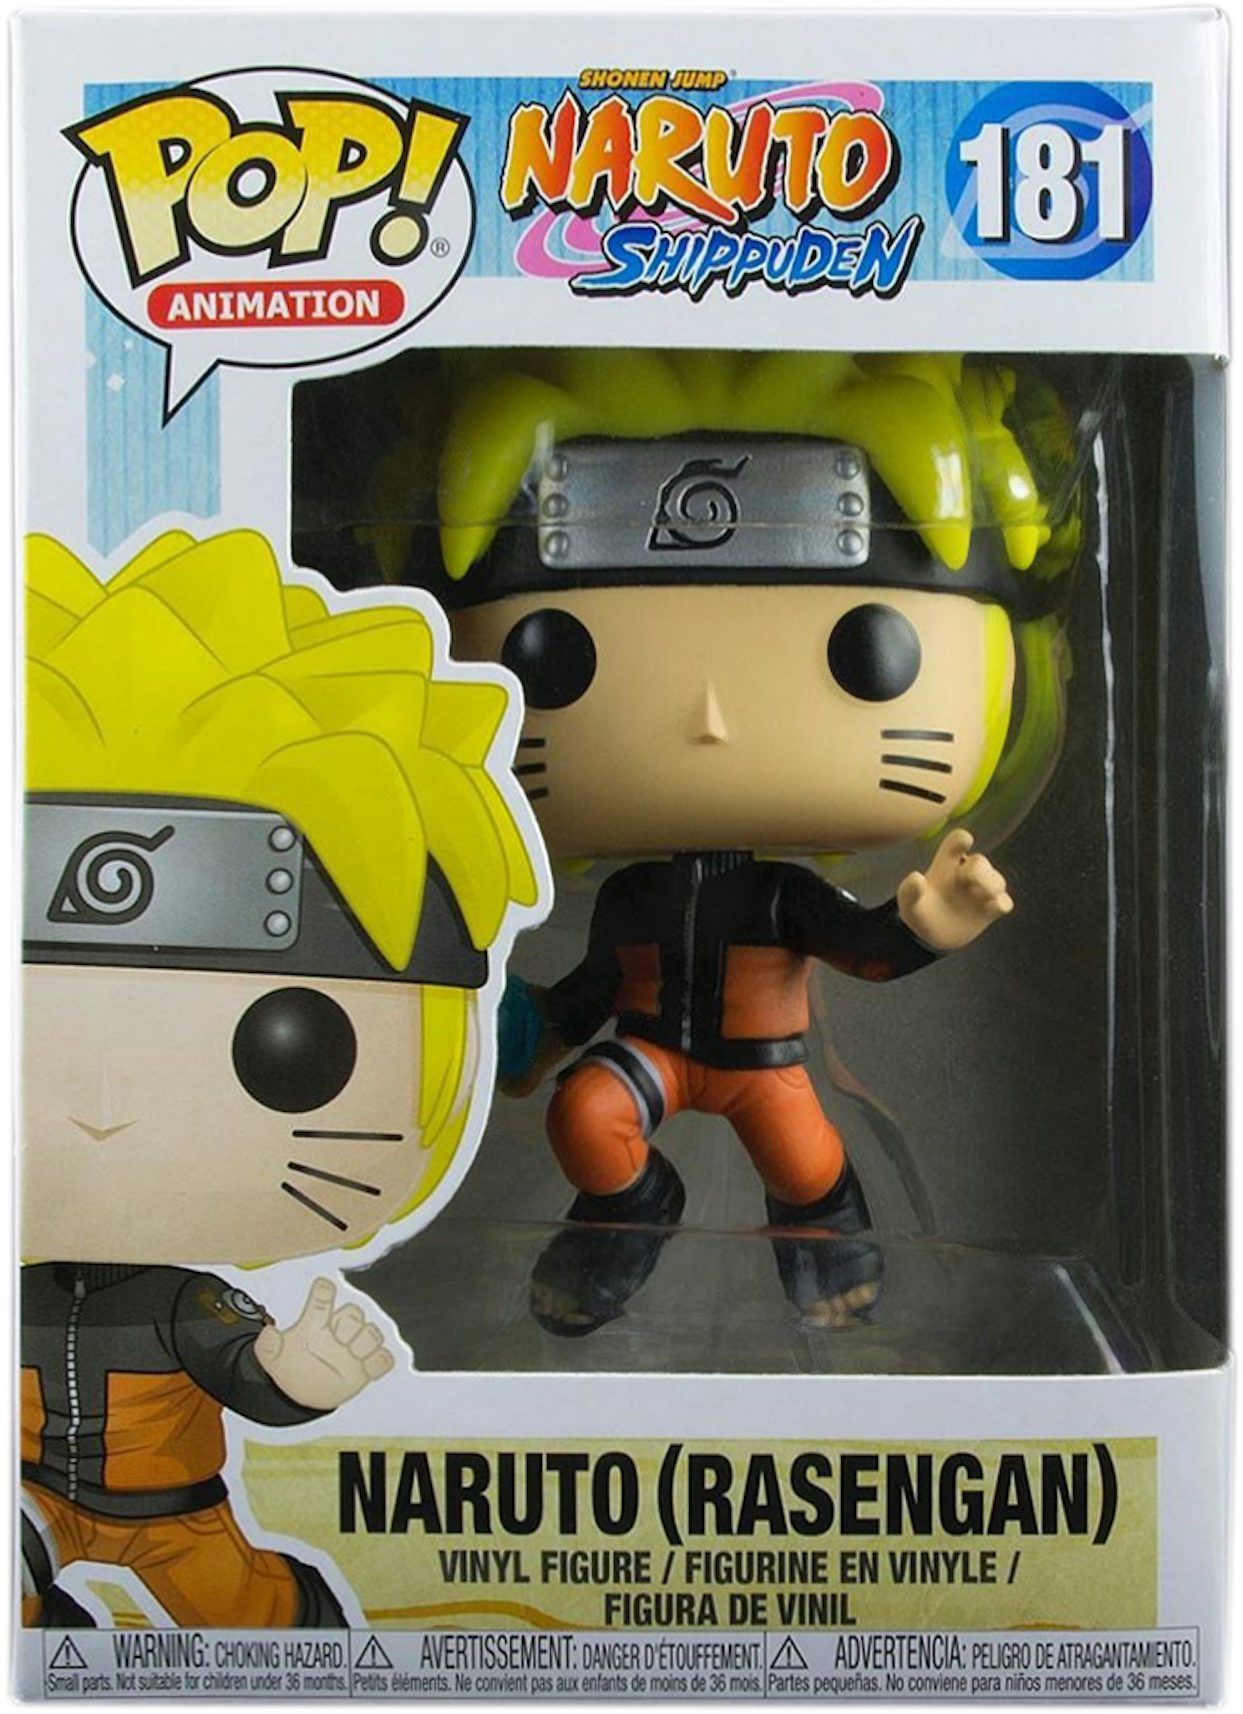 Figurine Funko Pop Naruto Shippuden Naruto 9 cm - Figurine de